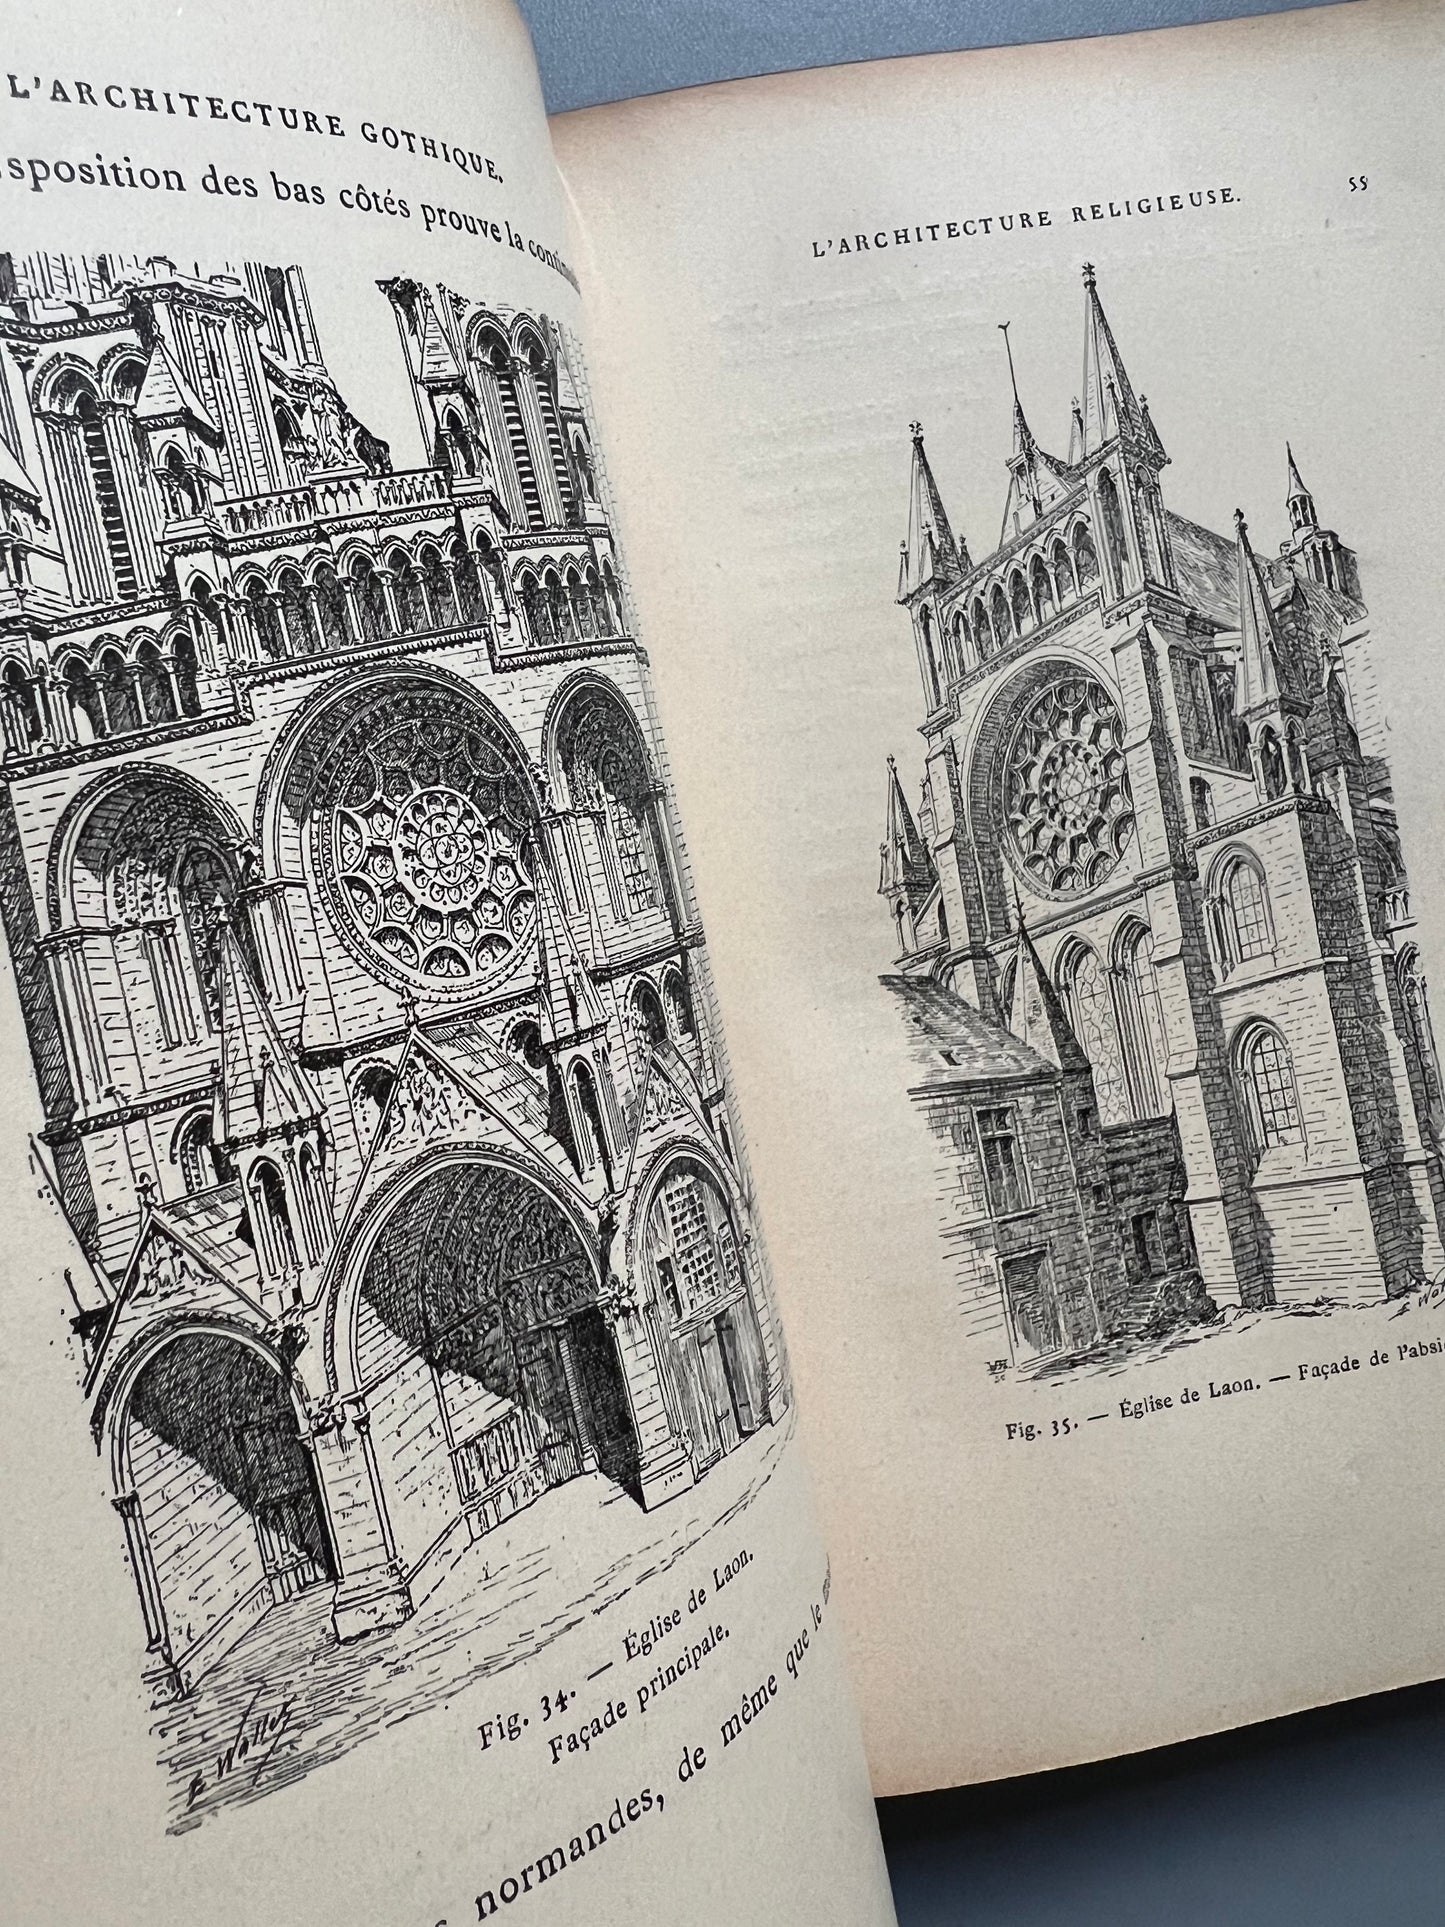 L'architecture gothique, Édouard Corroyer - Libraire d'Éducation nationale, ca. 1900